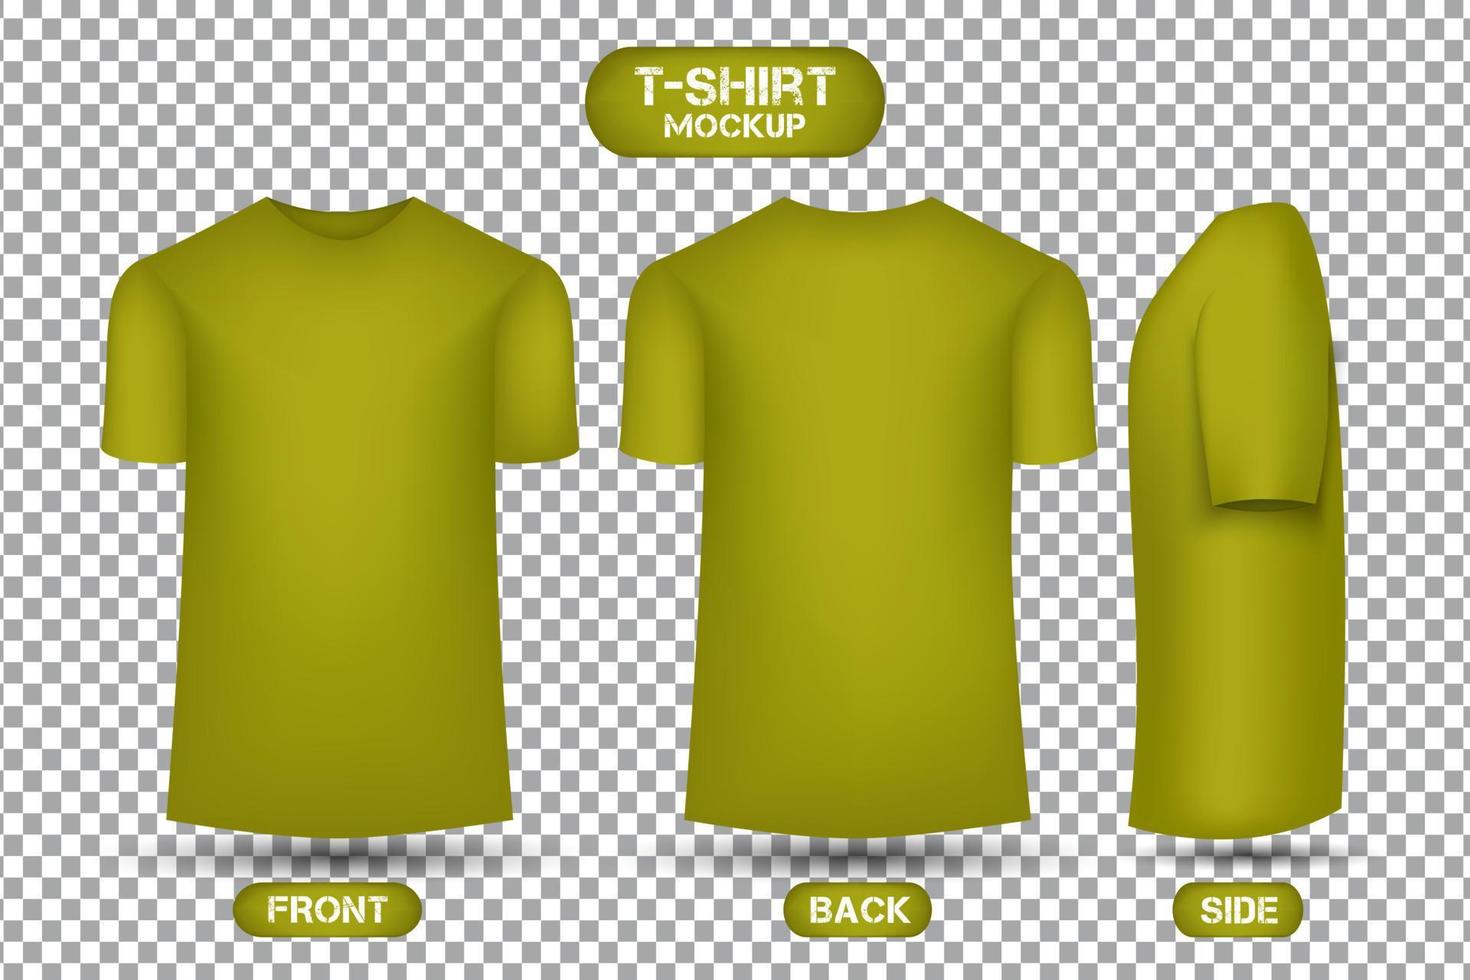 diseño de camiseta amarillo liso, con vistas frontal, posterior y lateral, vector de maqueta de camiseta de estilo 3d